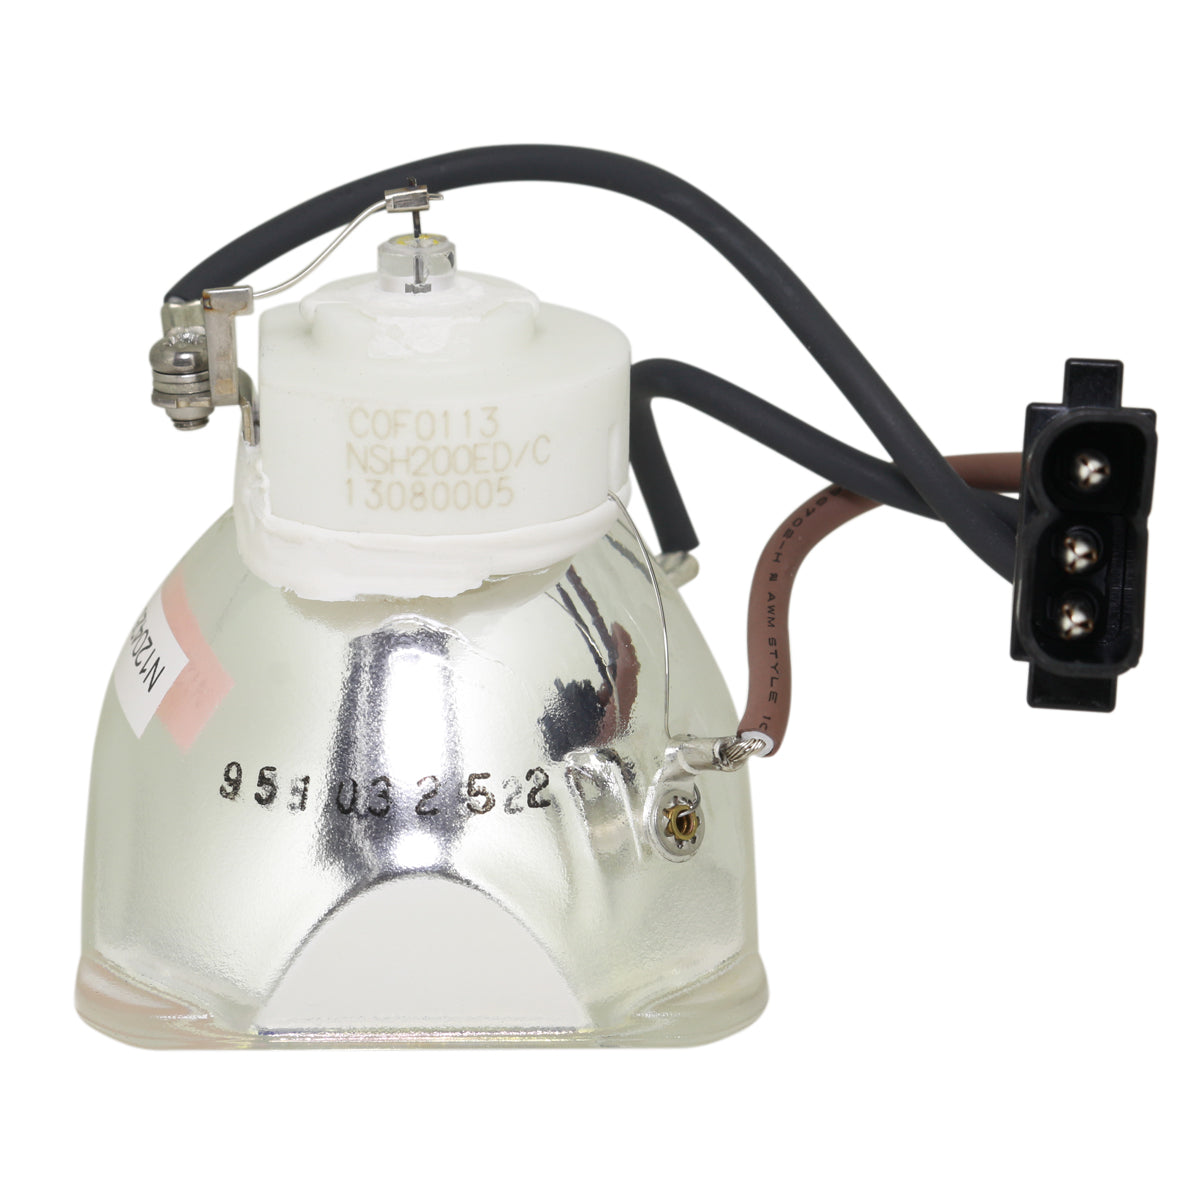 Eiki 23040007 Ushio Projector Bare Lamp